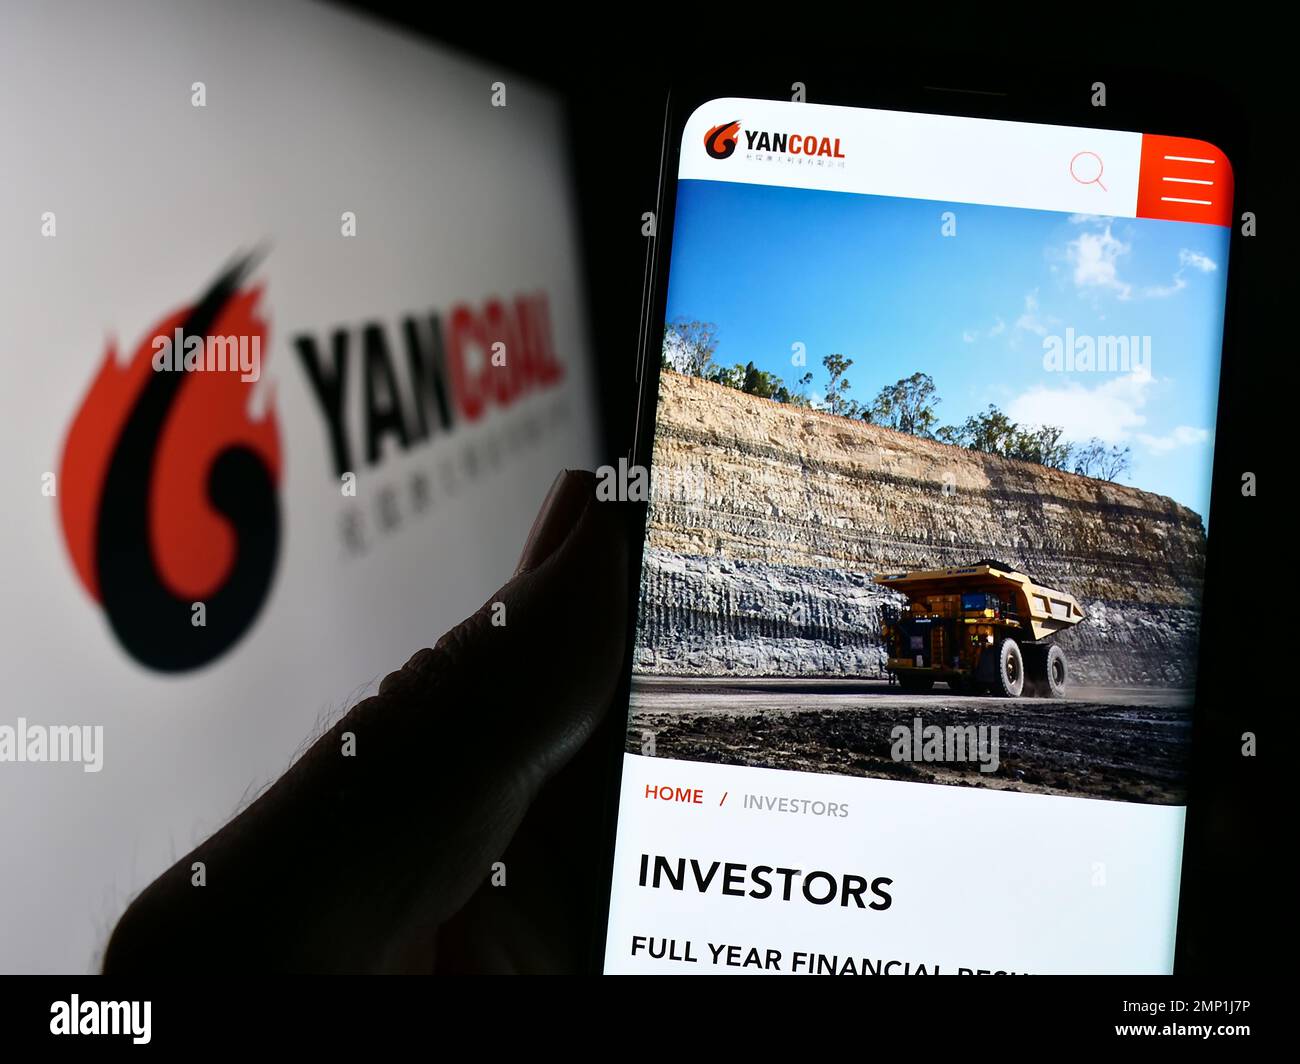 Persona in possesso di smartphone con pagina Web della società mineraria Yancoal Australia Limited sullo schermo con logo. Messa a fuoco al centro del display del telefono. Foto Stock